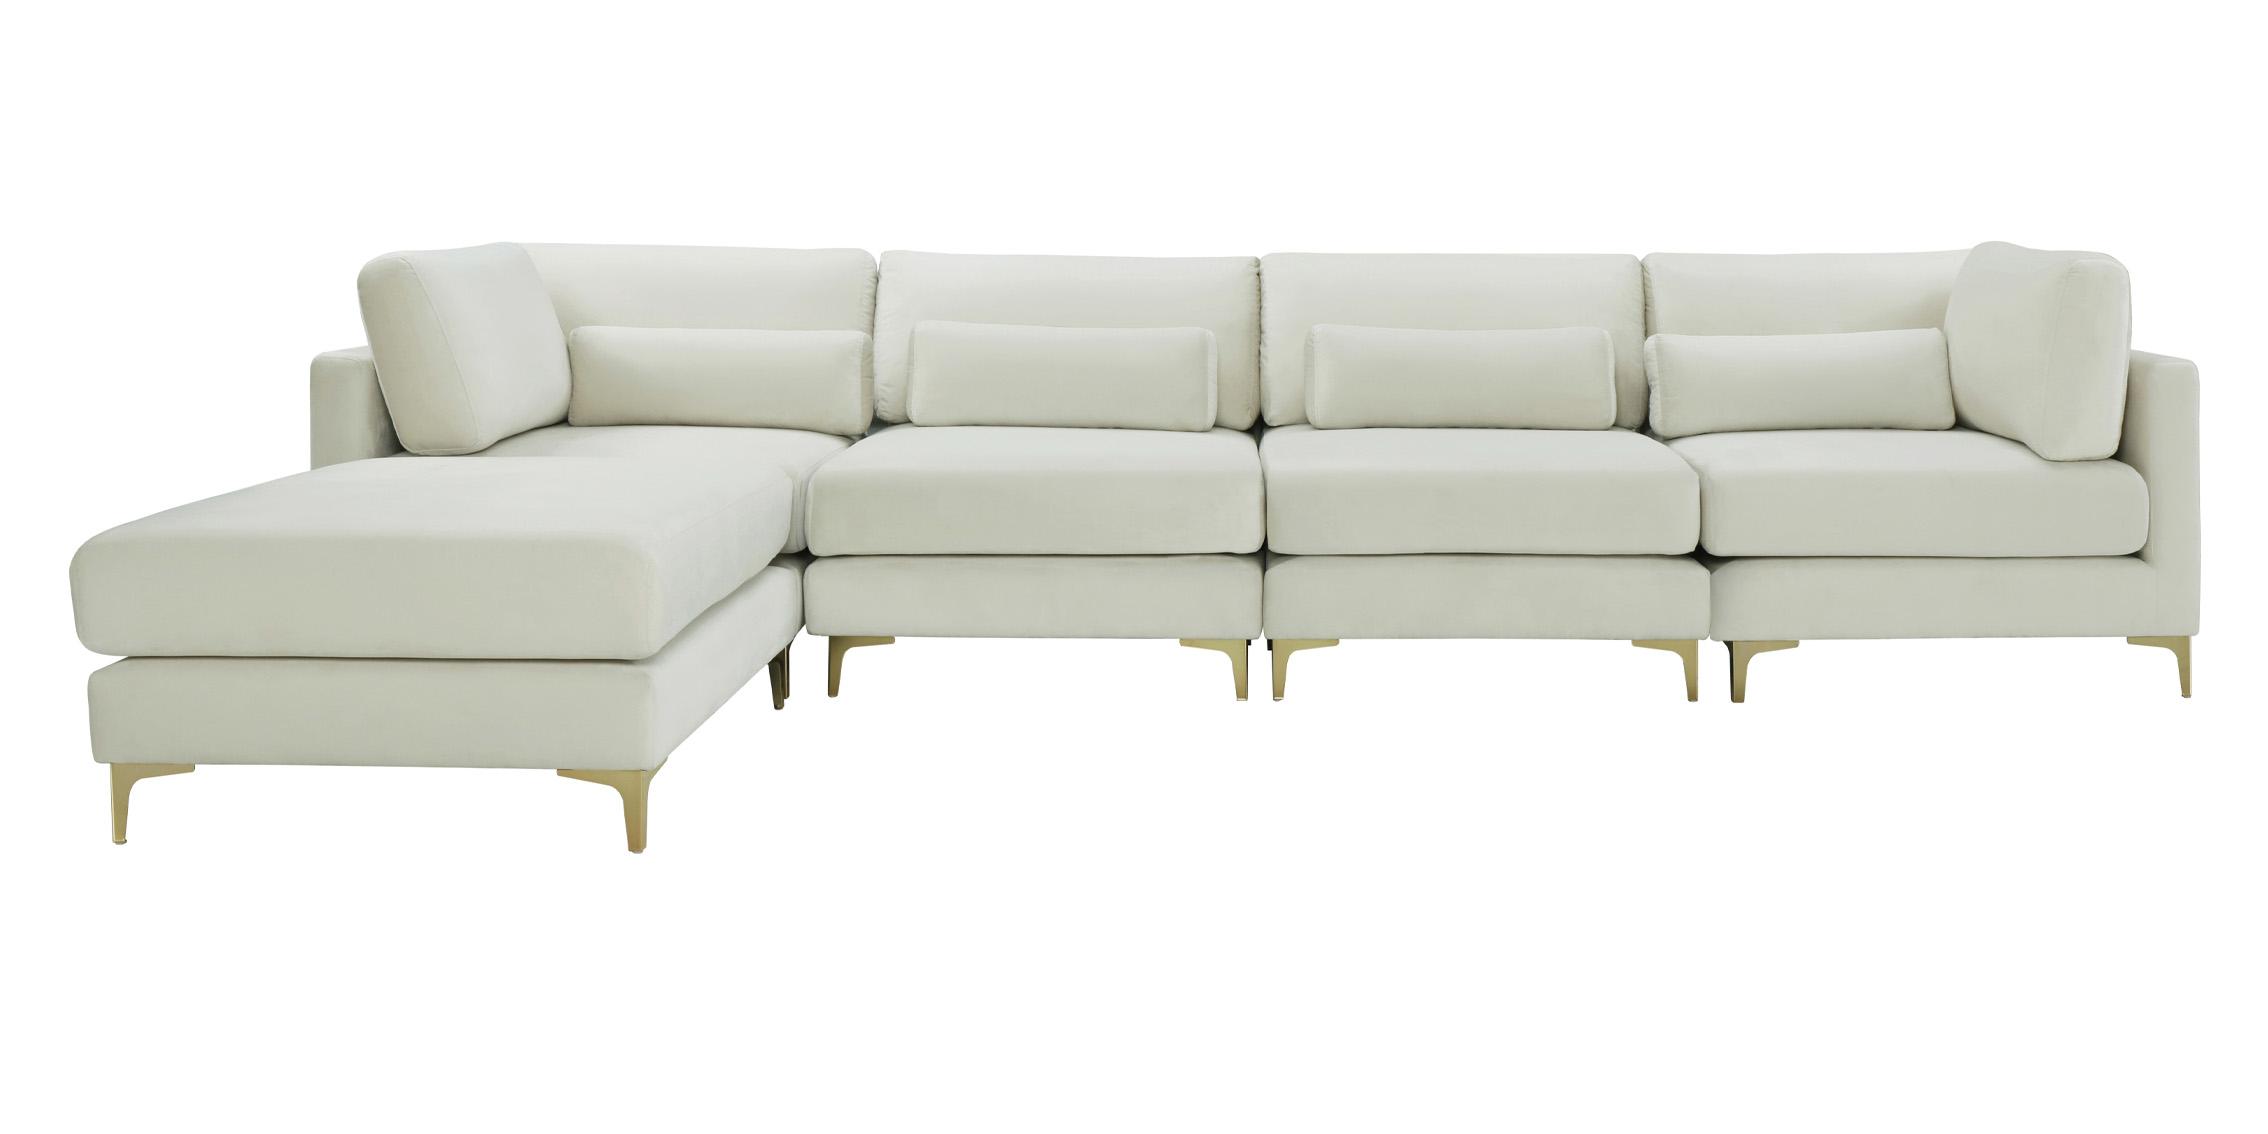 

    
Meridian Furniture JULIA 605Cream-Sec5A Modular Sectional Sofa Cream 605Cream-Sec5A
